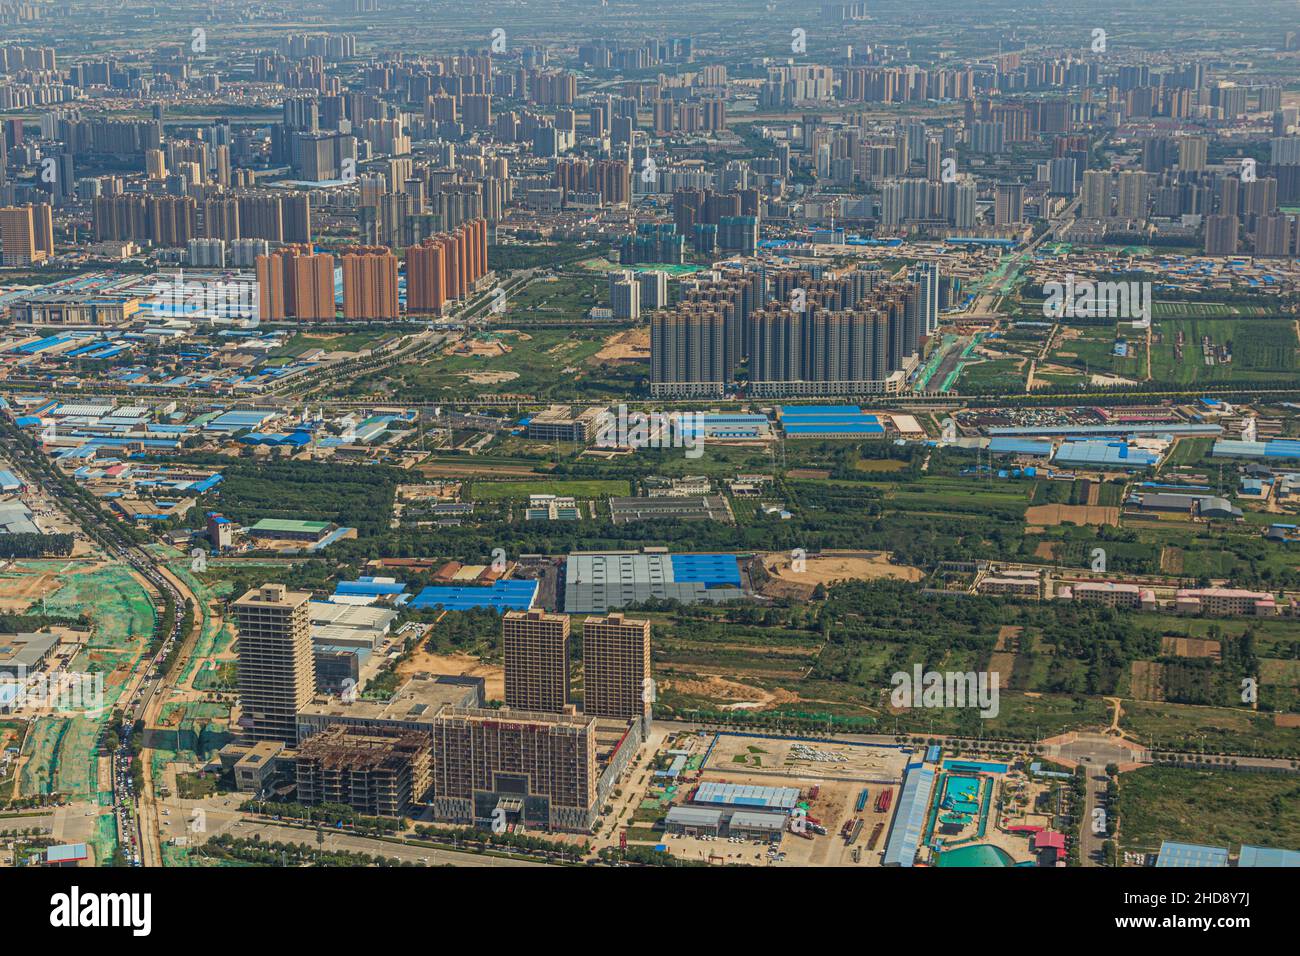 Vue aérienne de Xianyang, ville à l'ouest de Xi'an, Chine Banque D'Images